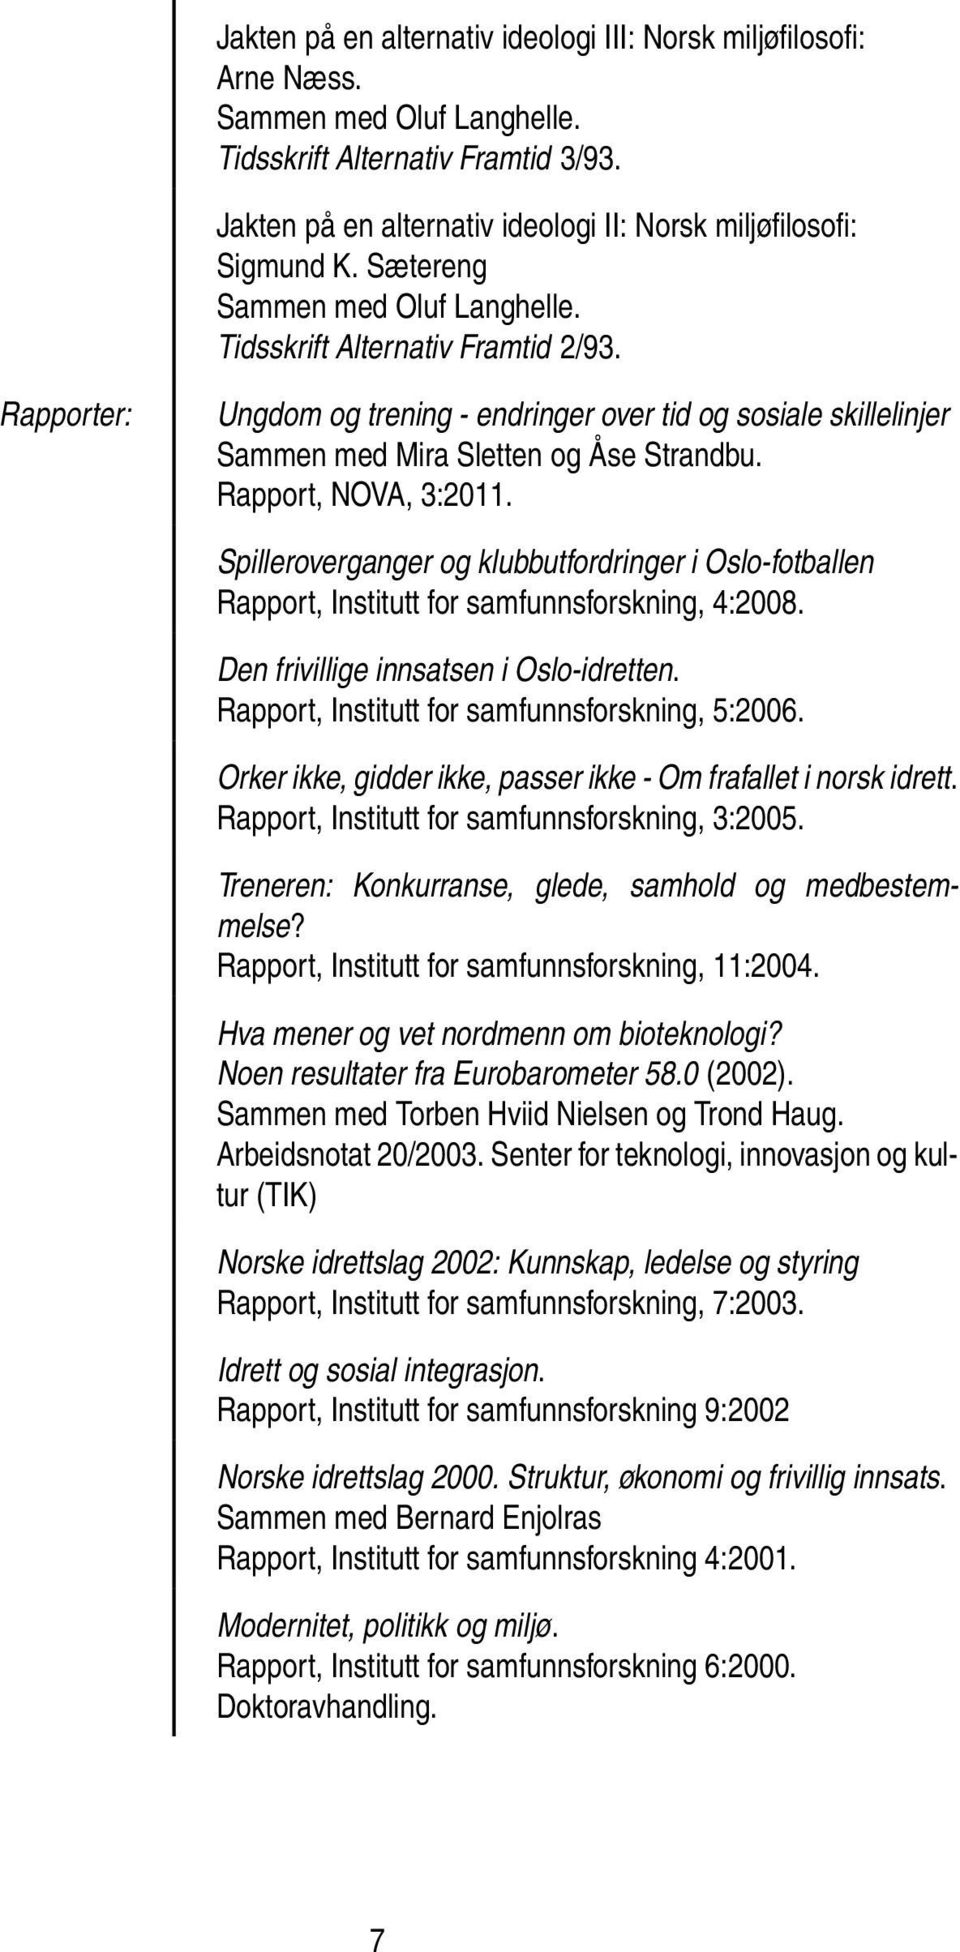 Rapporter: Ungdom og trening - endringer over tid og sosiale skillelinjer Sammen med Mira Sletten og Åse Strandbu. Rapport, NOVA, 3:2011.